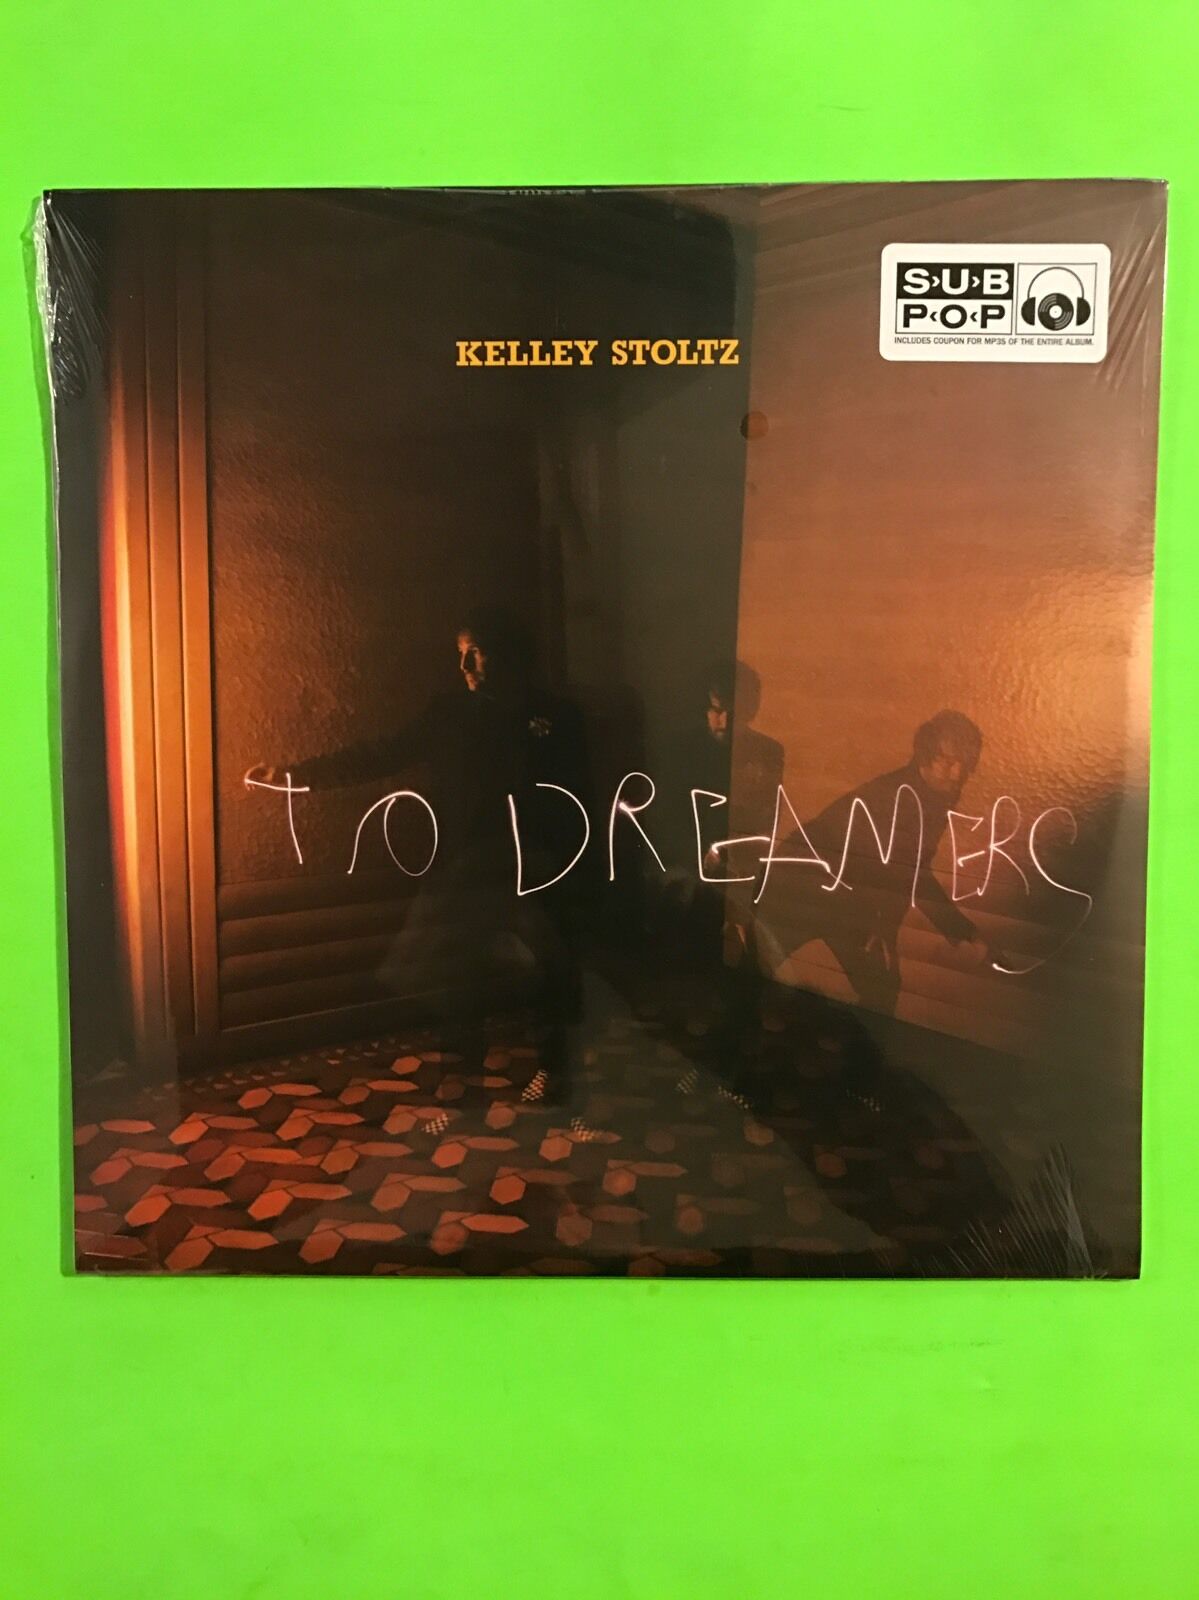 To Dreamers Kelley Stoltz New Vinyl LP Sub Pop